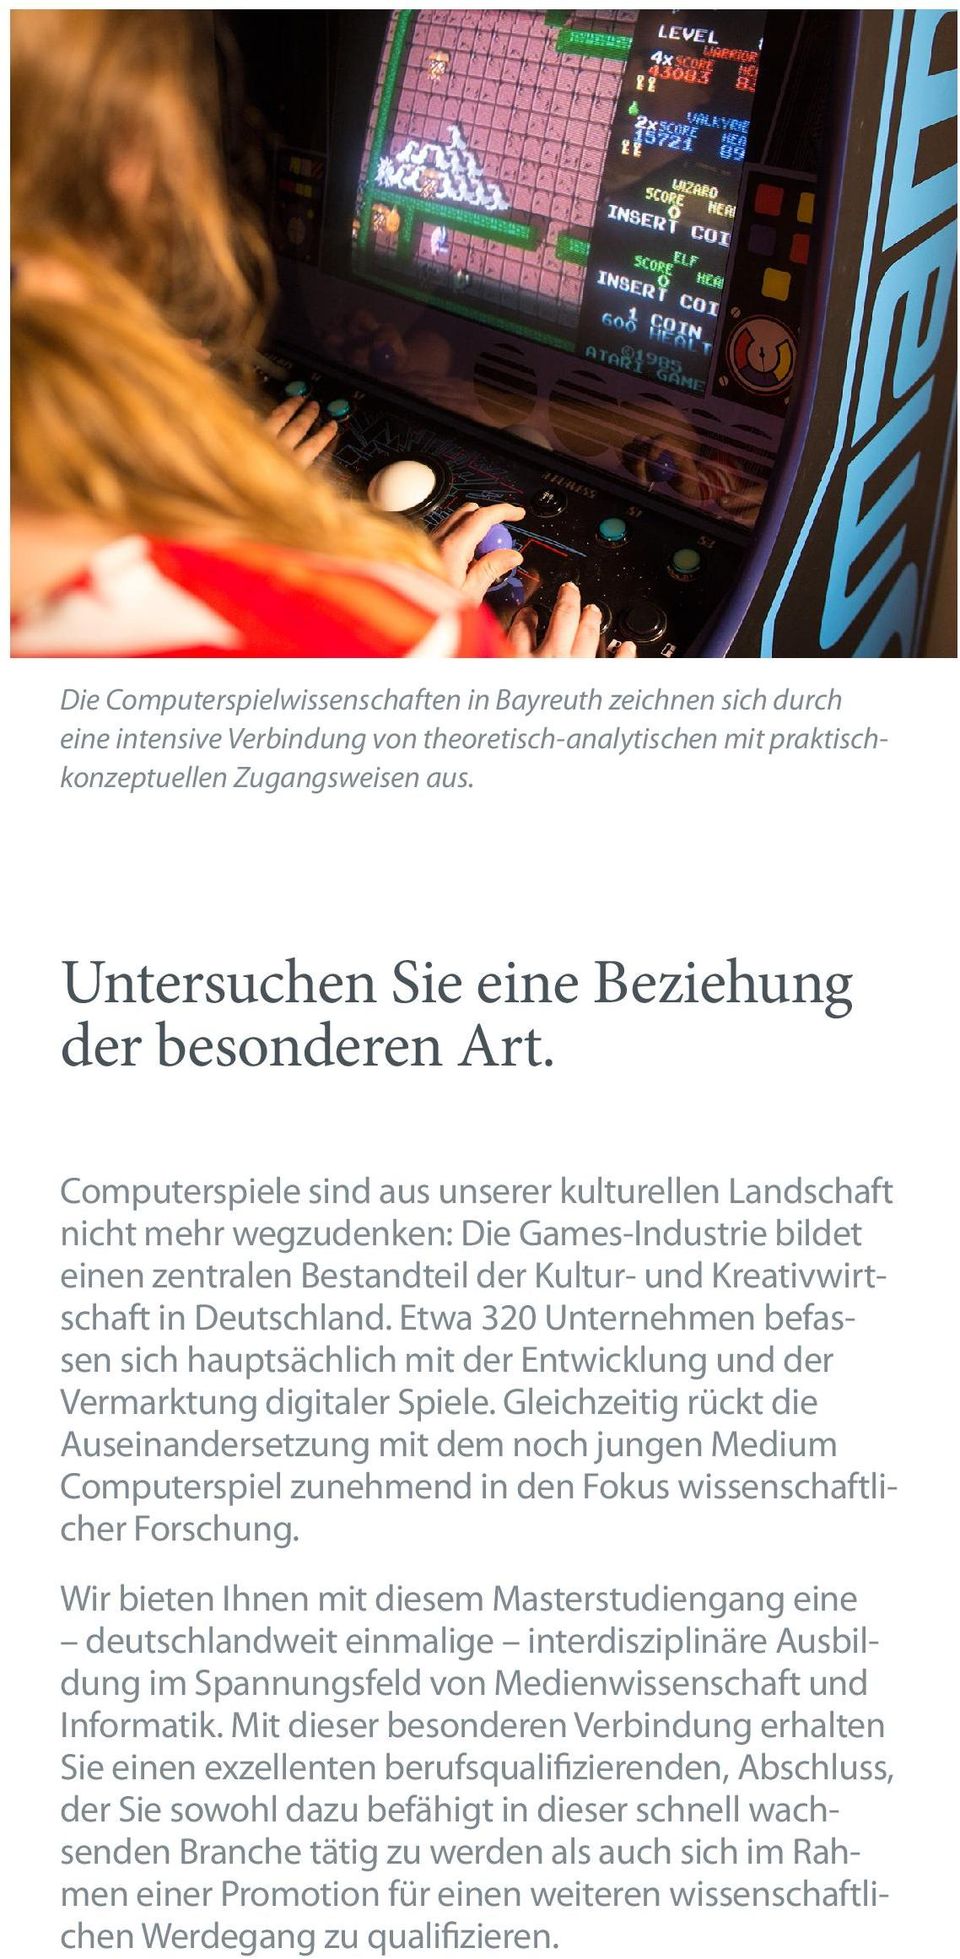 Computerspiele sind aus unserer kulturellen Landschaft nicht mehr wegzudenken: Die Games-Industrie bildet einen zentralen Bestandteil der Kultur- und Kreativwirtschaft in Deutschland.